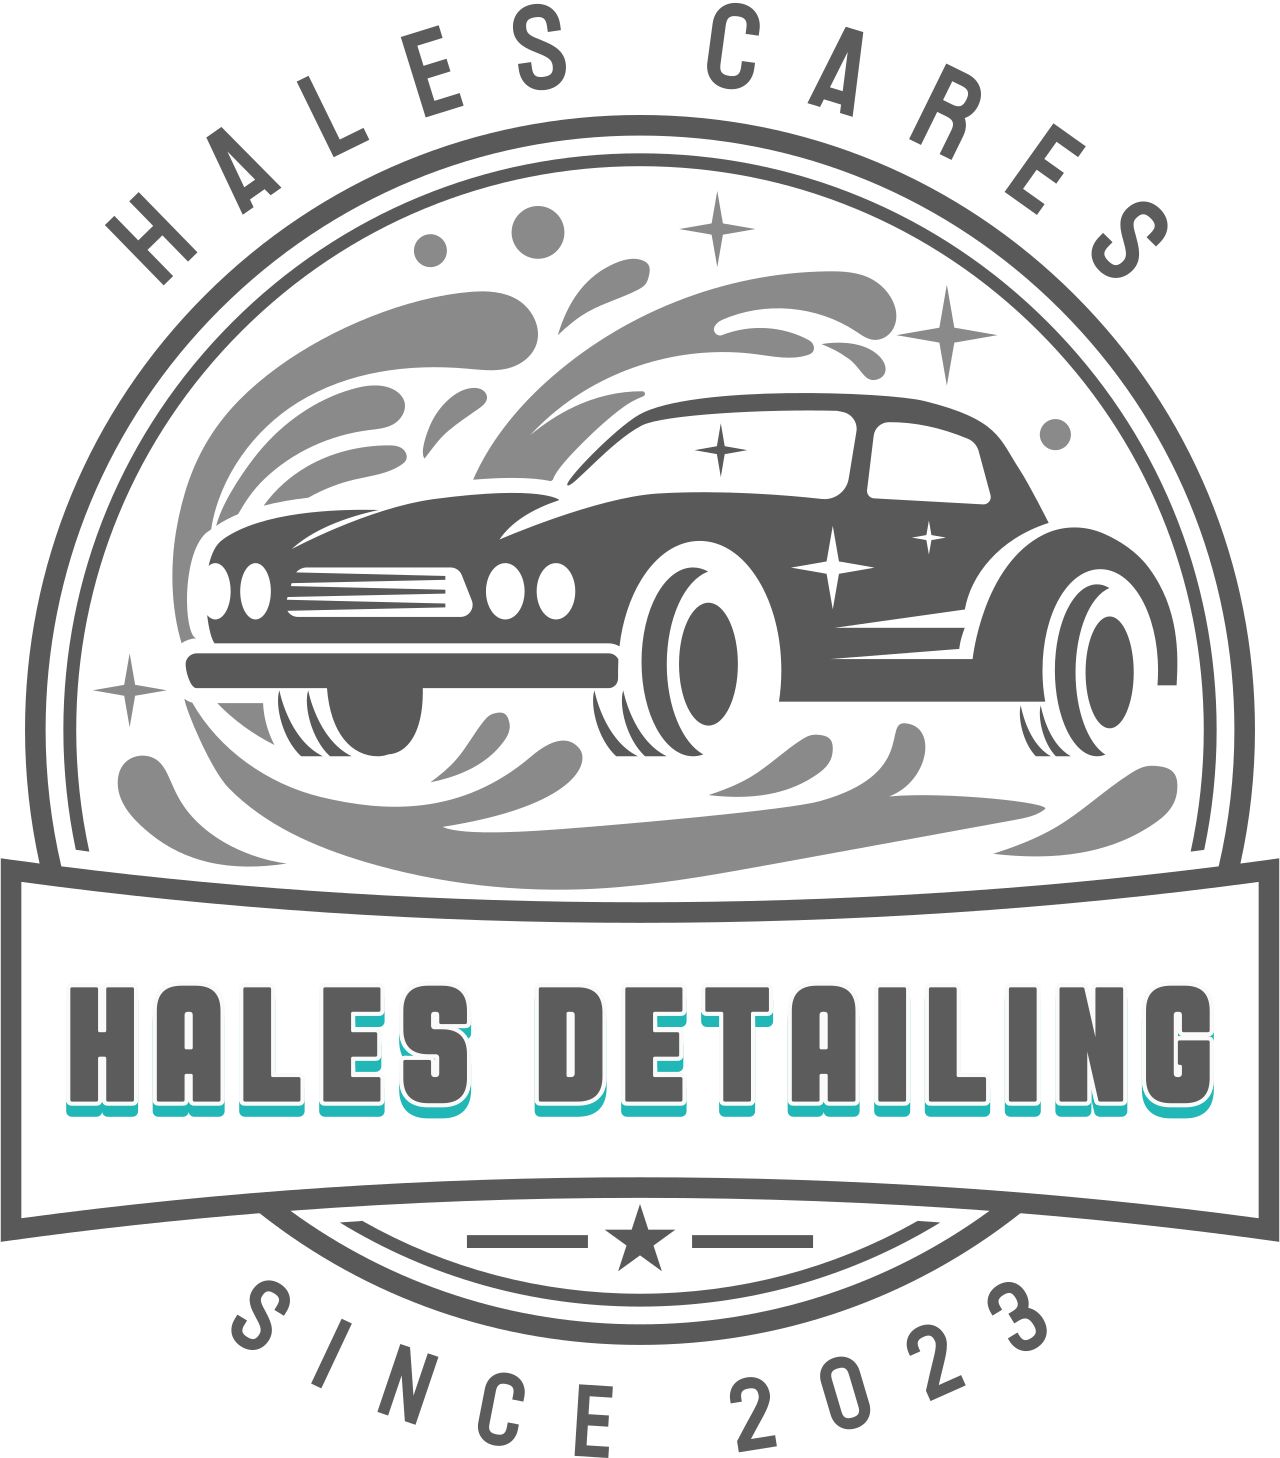 Hales Detailing's logo